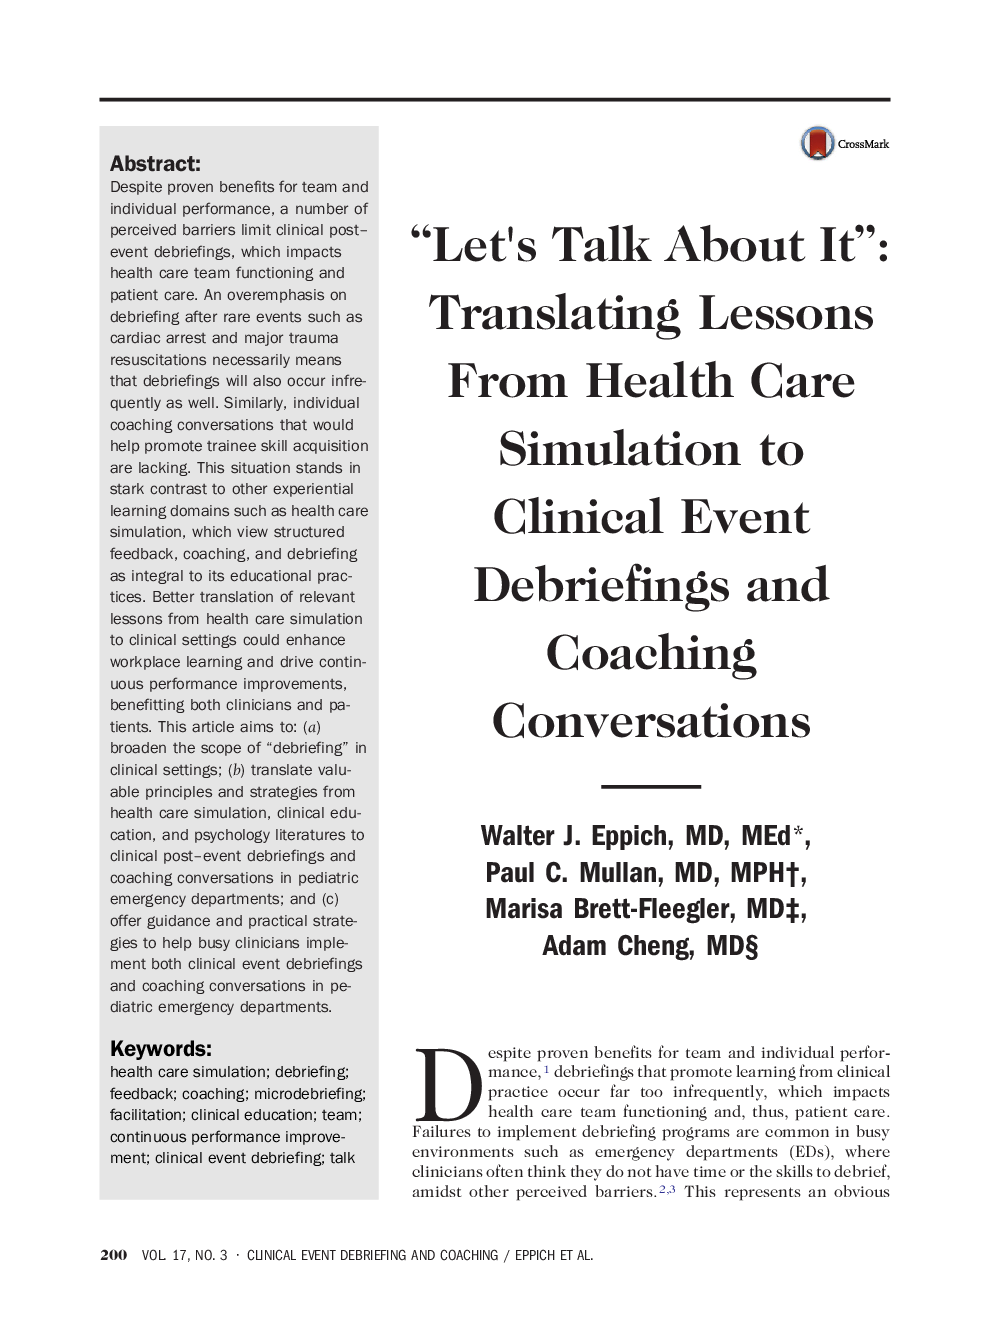 "بگذارید درباره آن صحبت کنیم": ترجمه درس‌ها از شبیه سازی مراقبت بهداشتی به گفتگوهای بالینی و گفتگوهای مربیگری